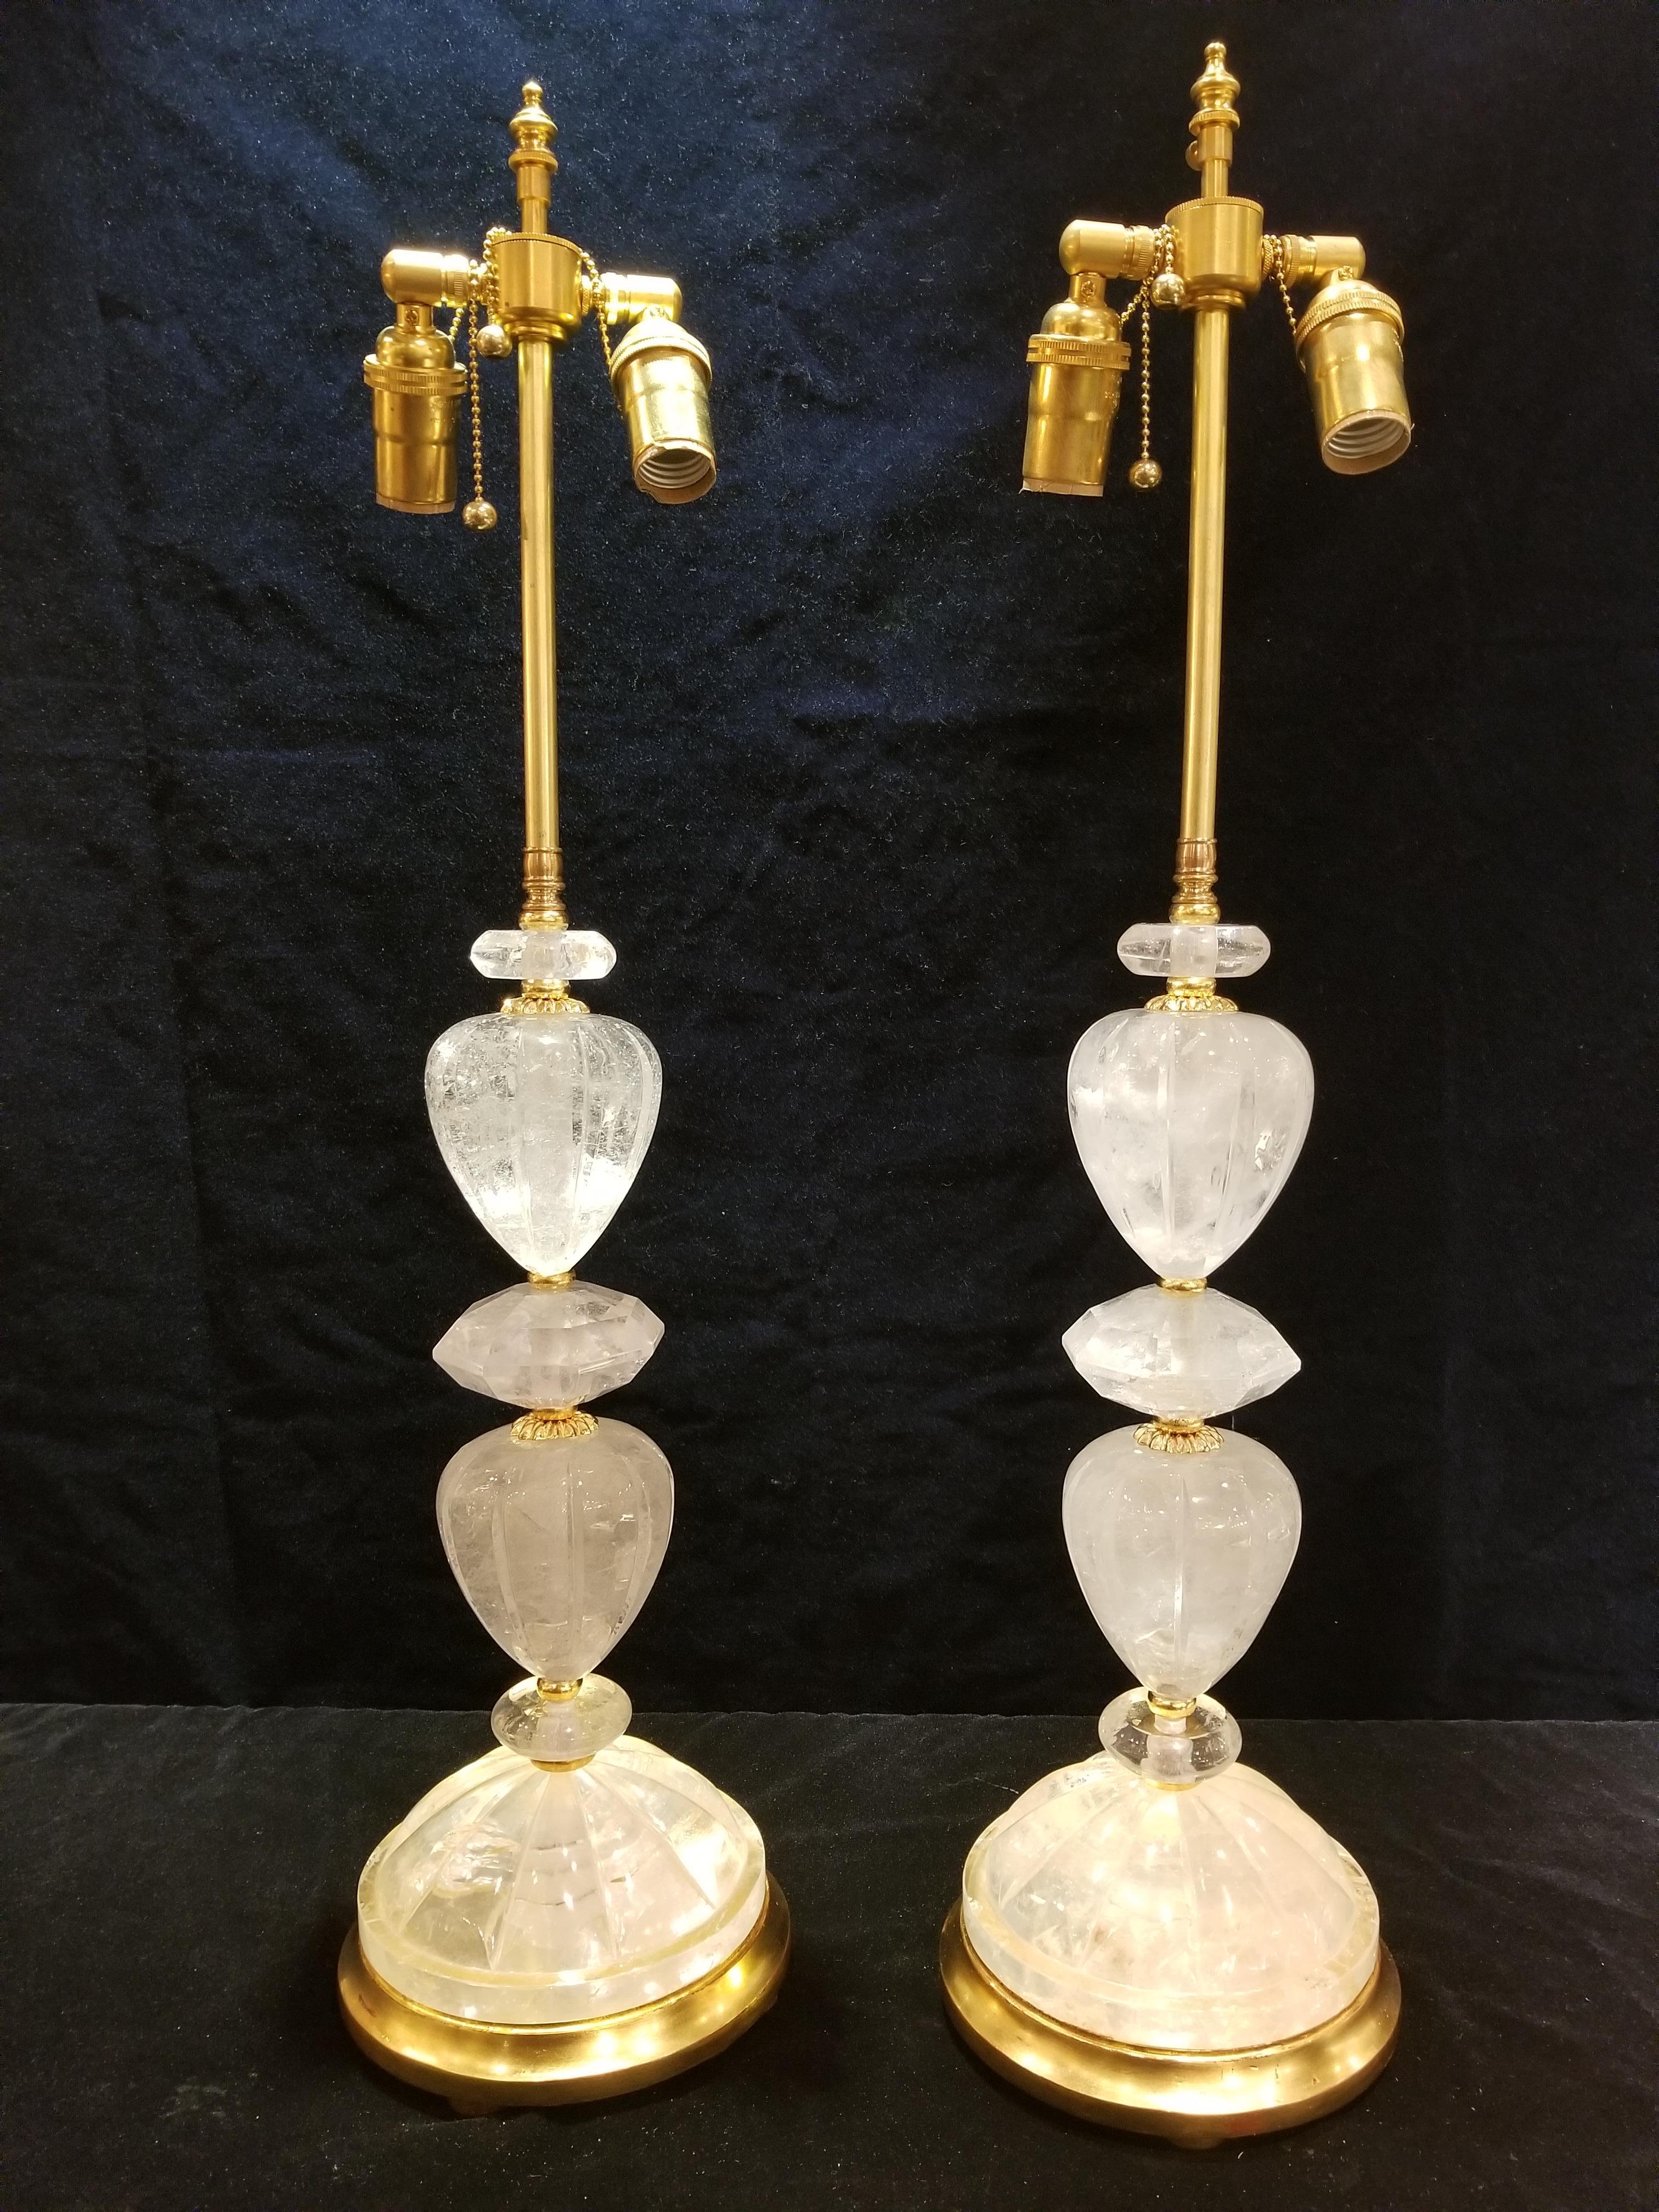 Ein feines Paar von Französisch Louis XVI-Stil handgeschnitzten Bergkristall Ormolu und vergoldetem Holz Lampen. Dieses illustre Paar von Lampen im Louis XVI-Stil aus handgeschnitztem Bergkristall und Ormolu ist außergewöhnlich gestaltet und